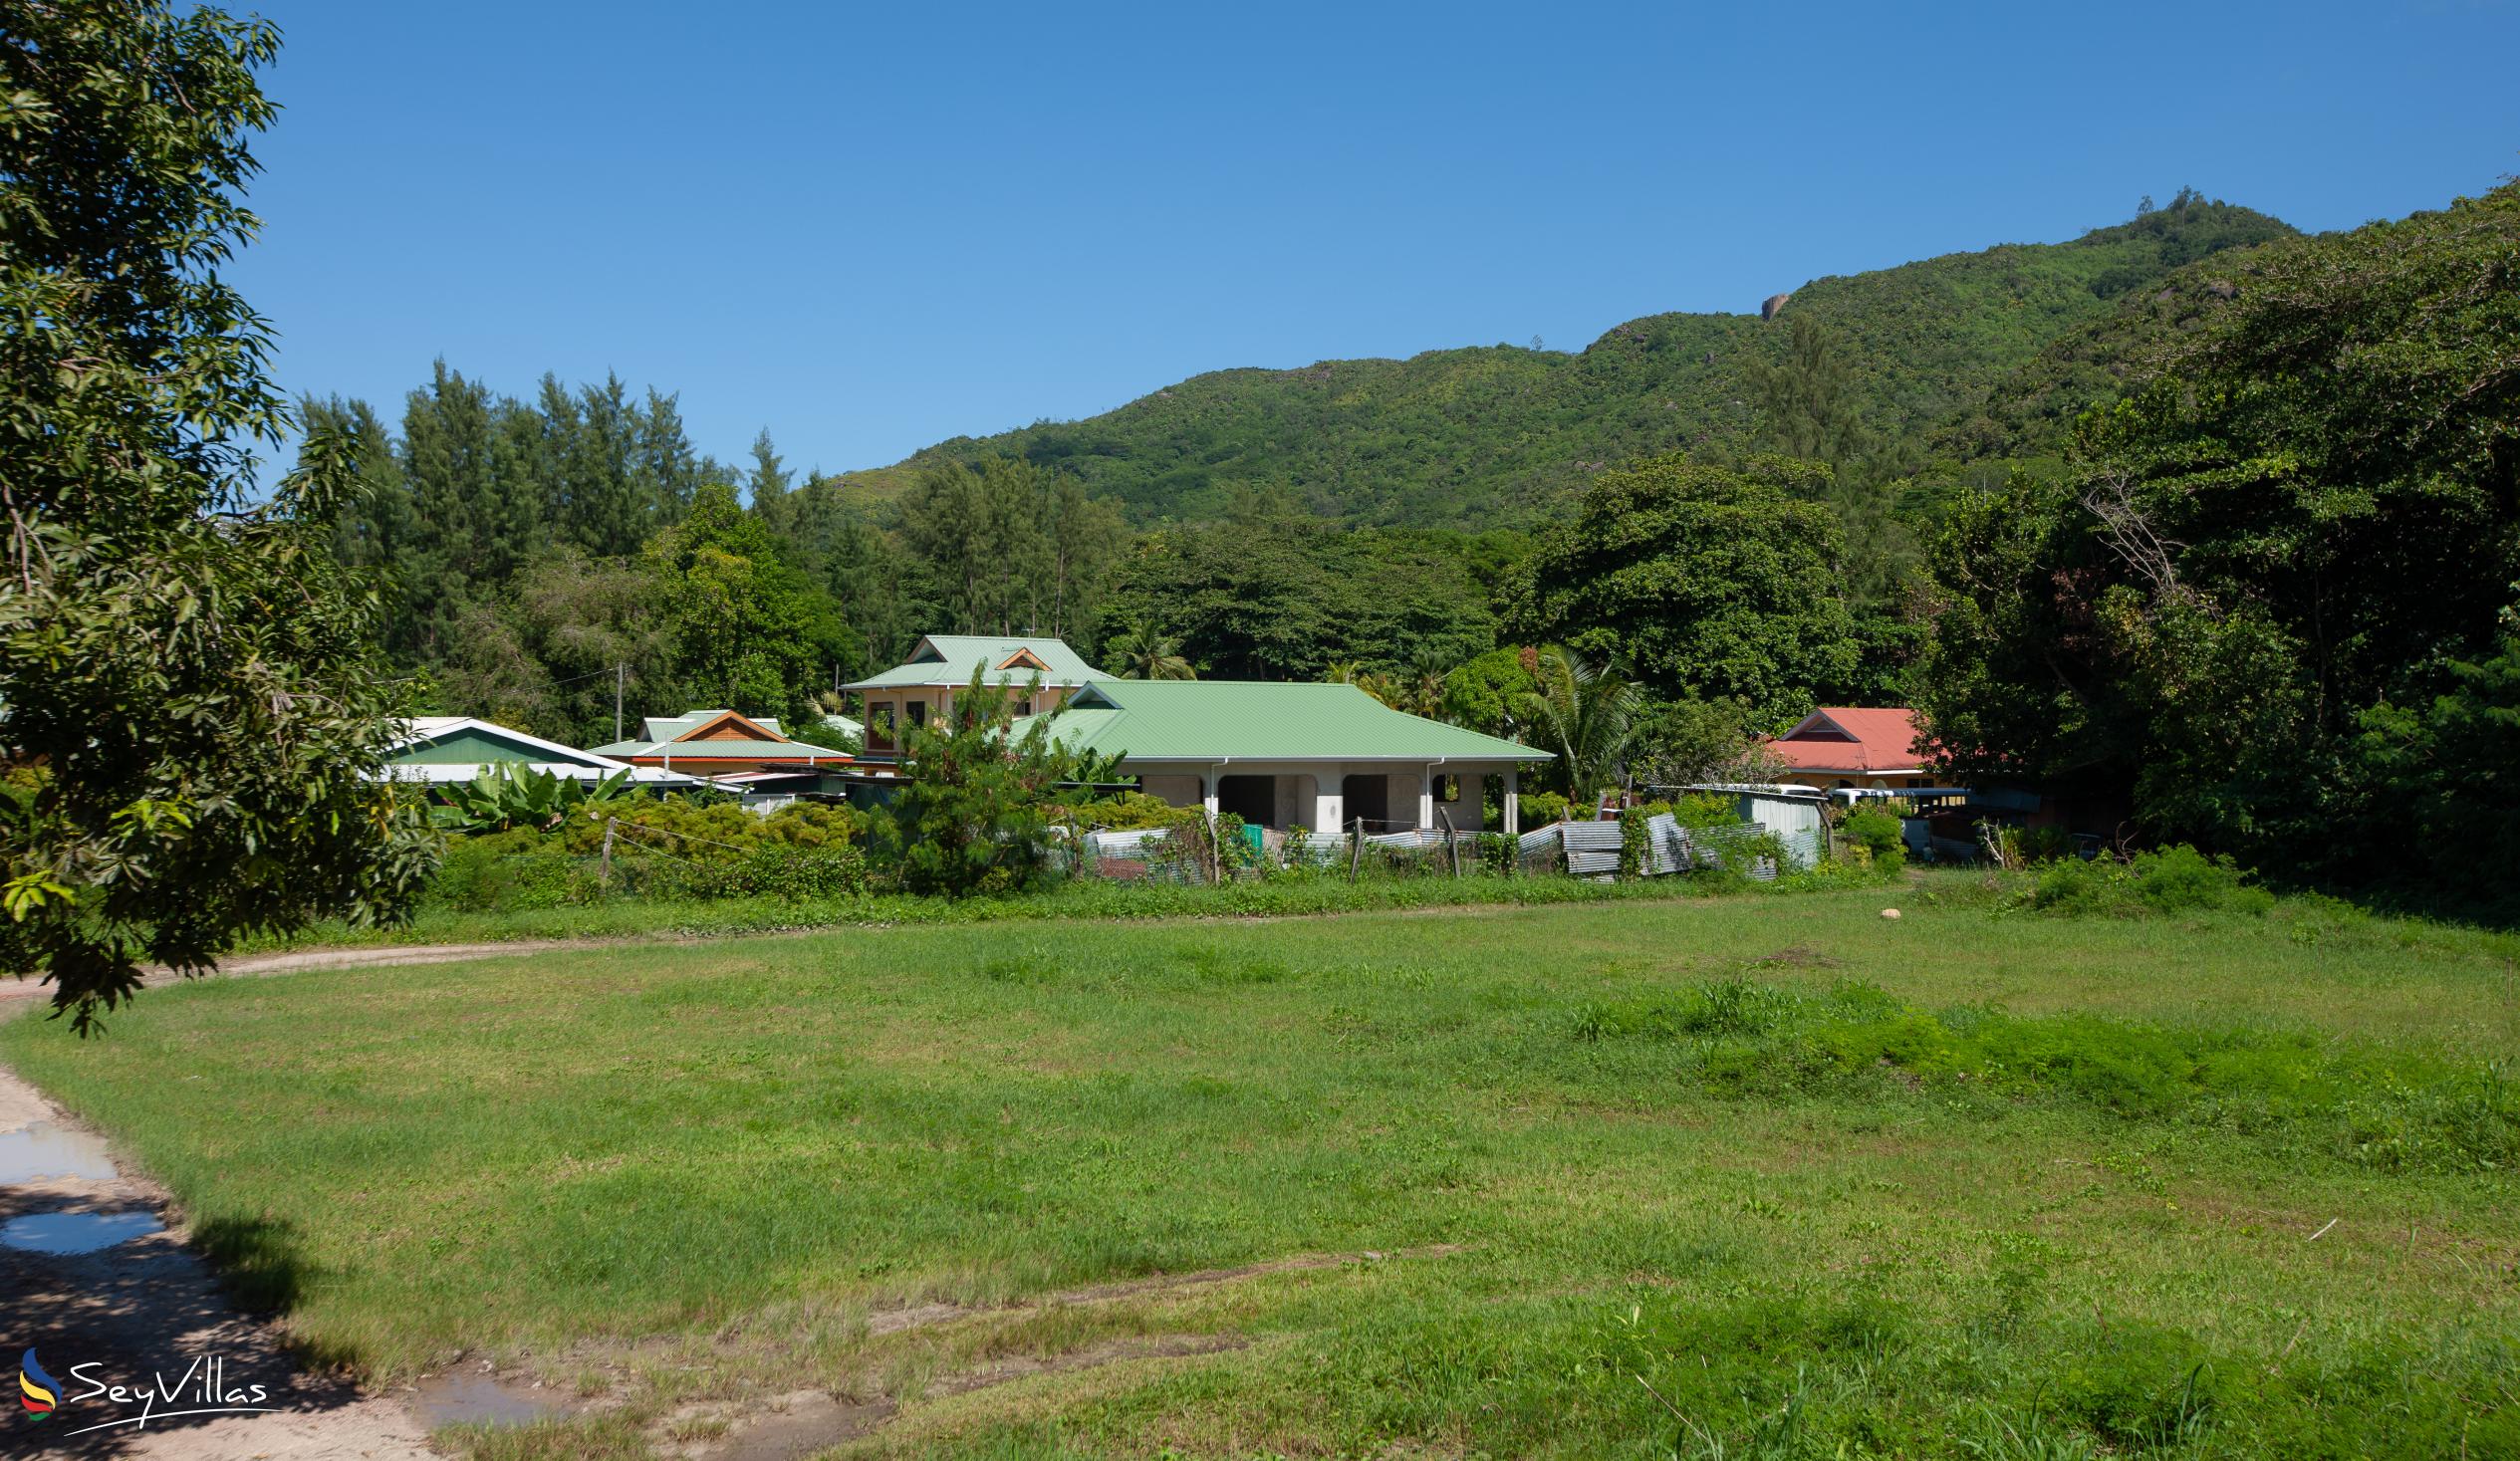 Foto 20: Tourterelle Holiday Home - Lage - Praslin (Seychellen)